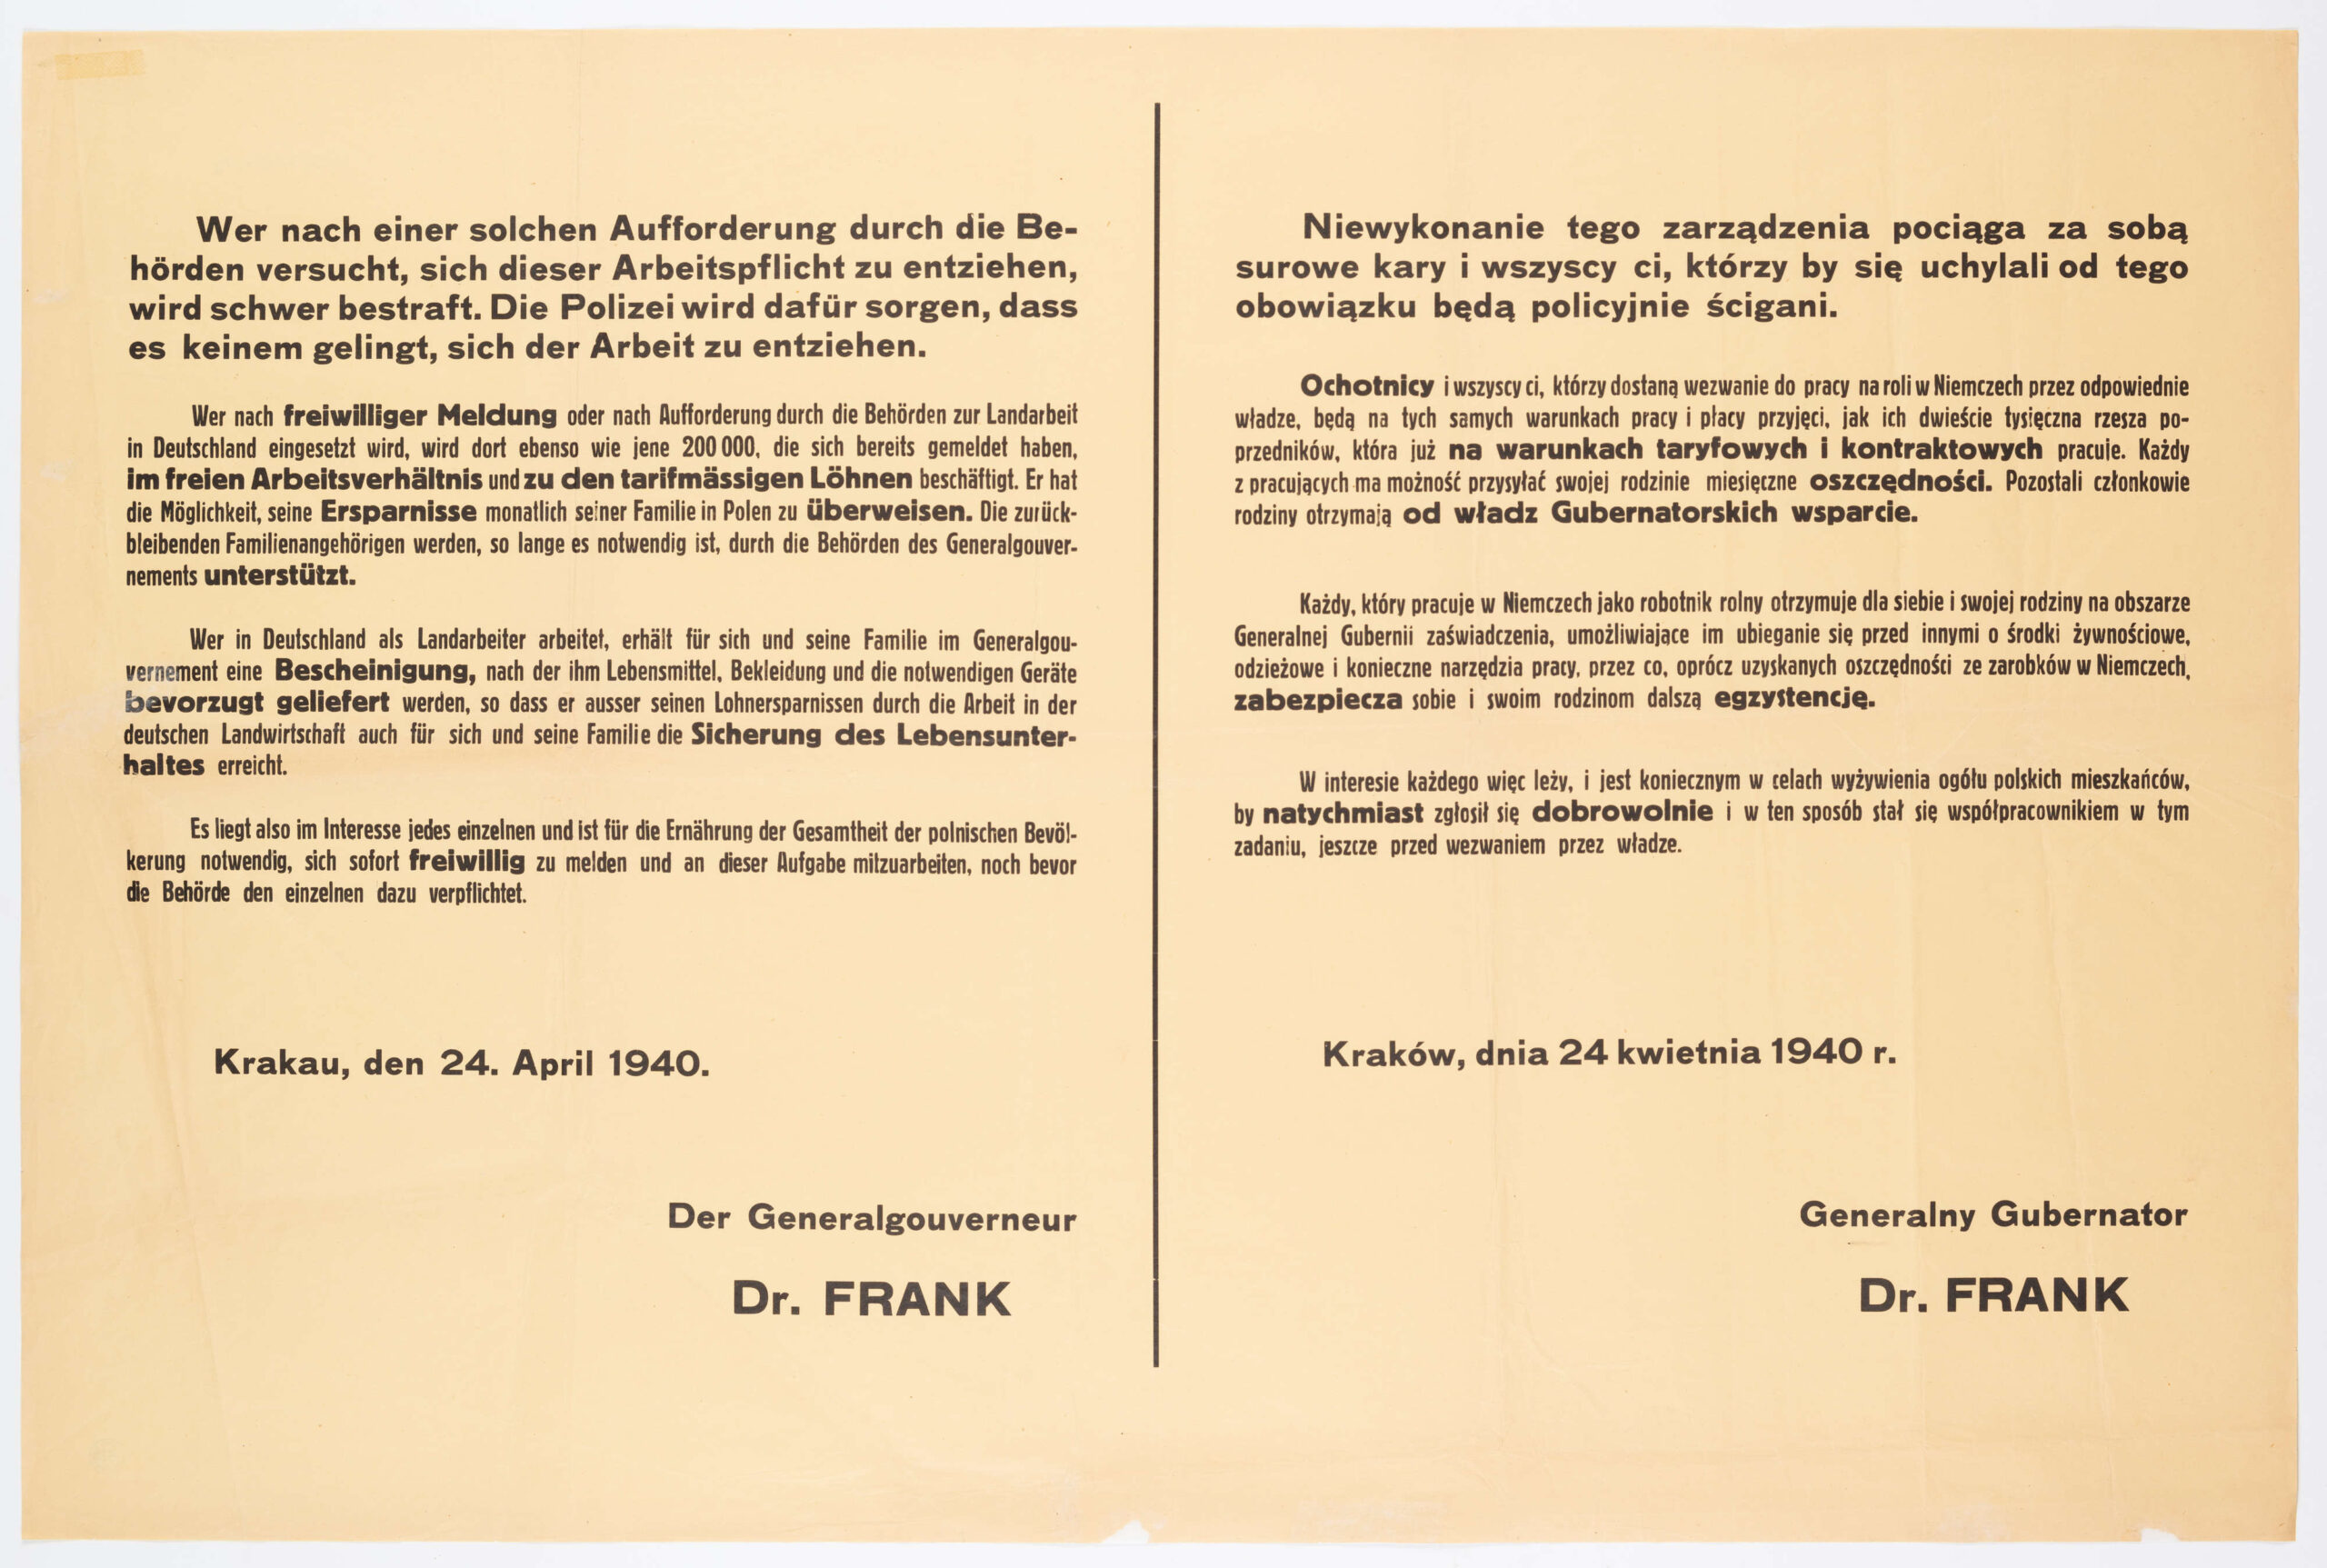 Zarządzenie o poborze na roboty do Niemiec. Afisz drukowany na żołtym papierze. Tekst dwujęzyczny (po niemiecku i po polsku). Zarządzenie wydane przez generalnego gubernatora H. Franka.